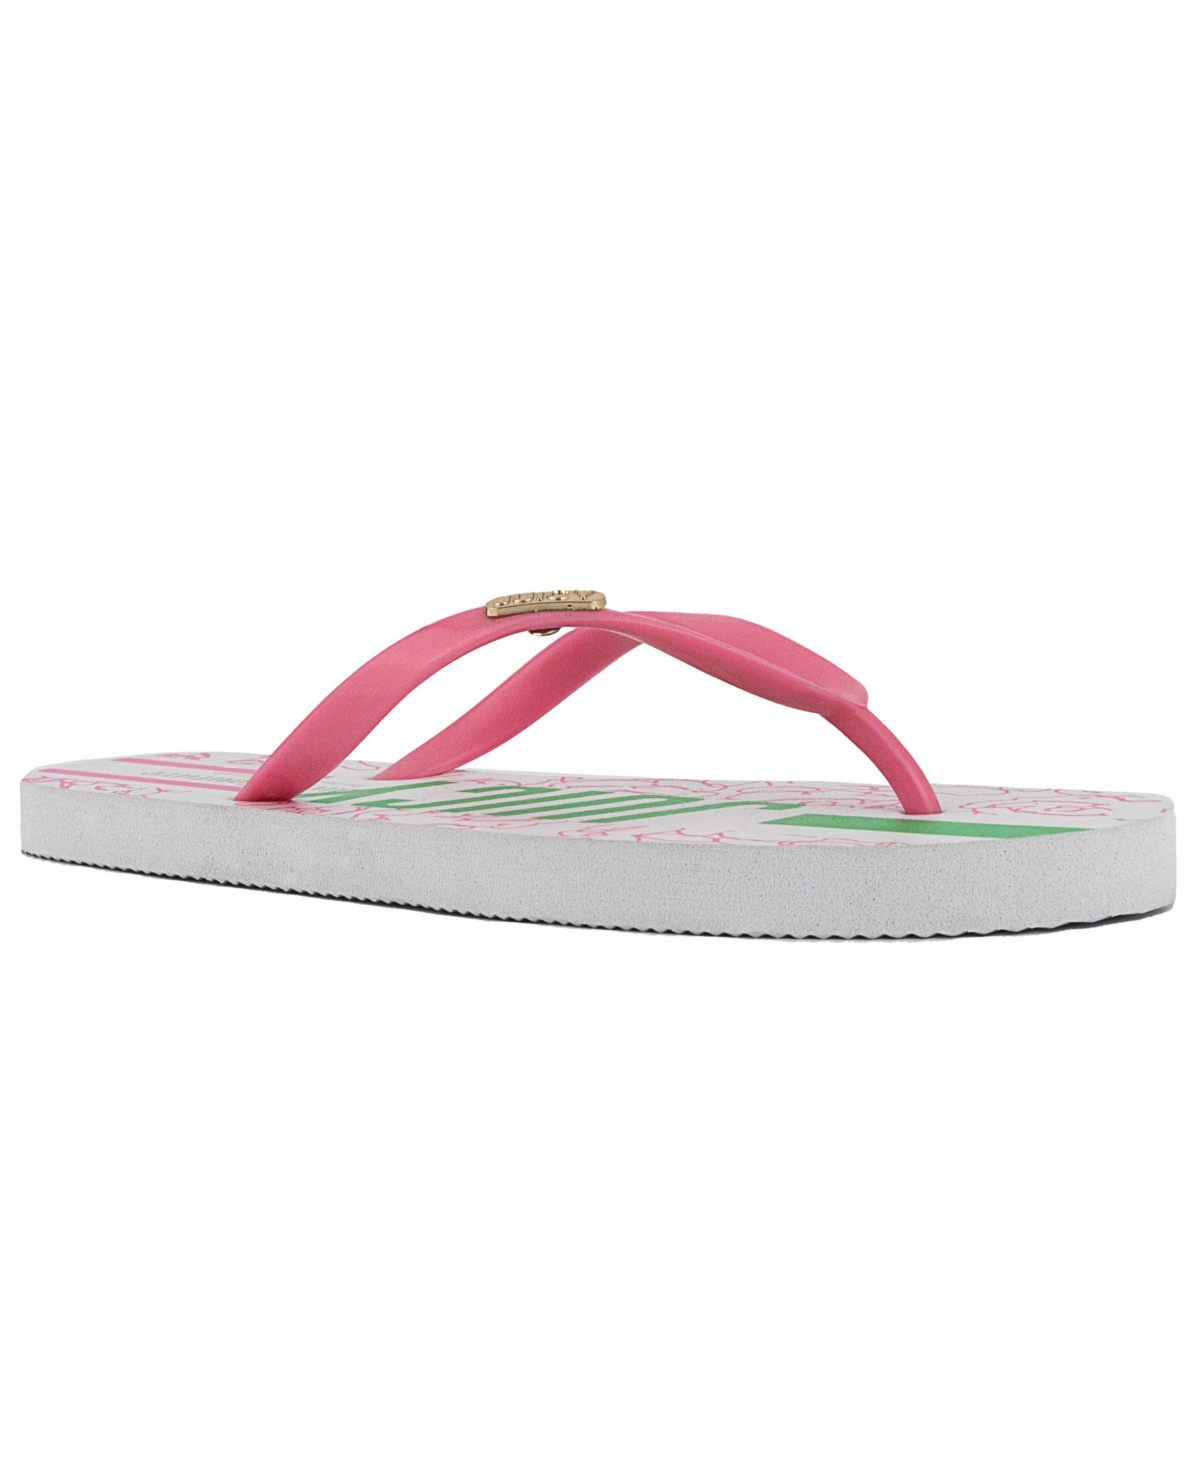 Women's Solo Flip Flops - Pink, Green, White